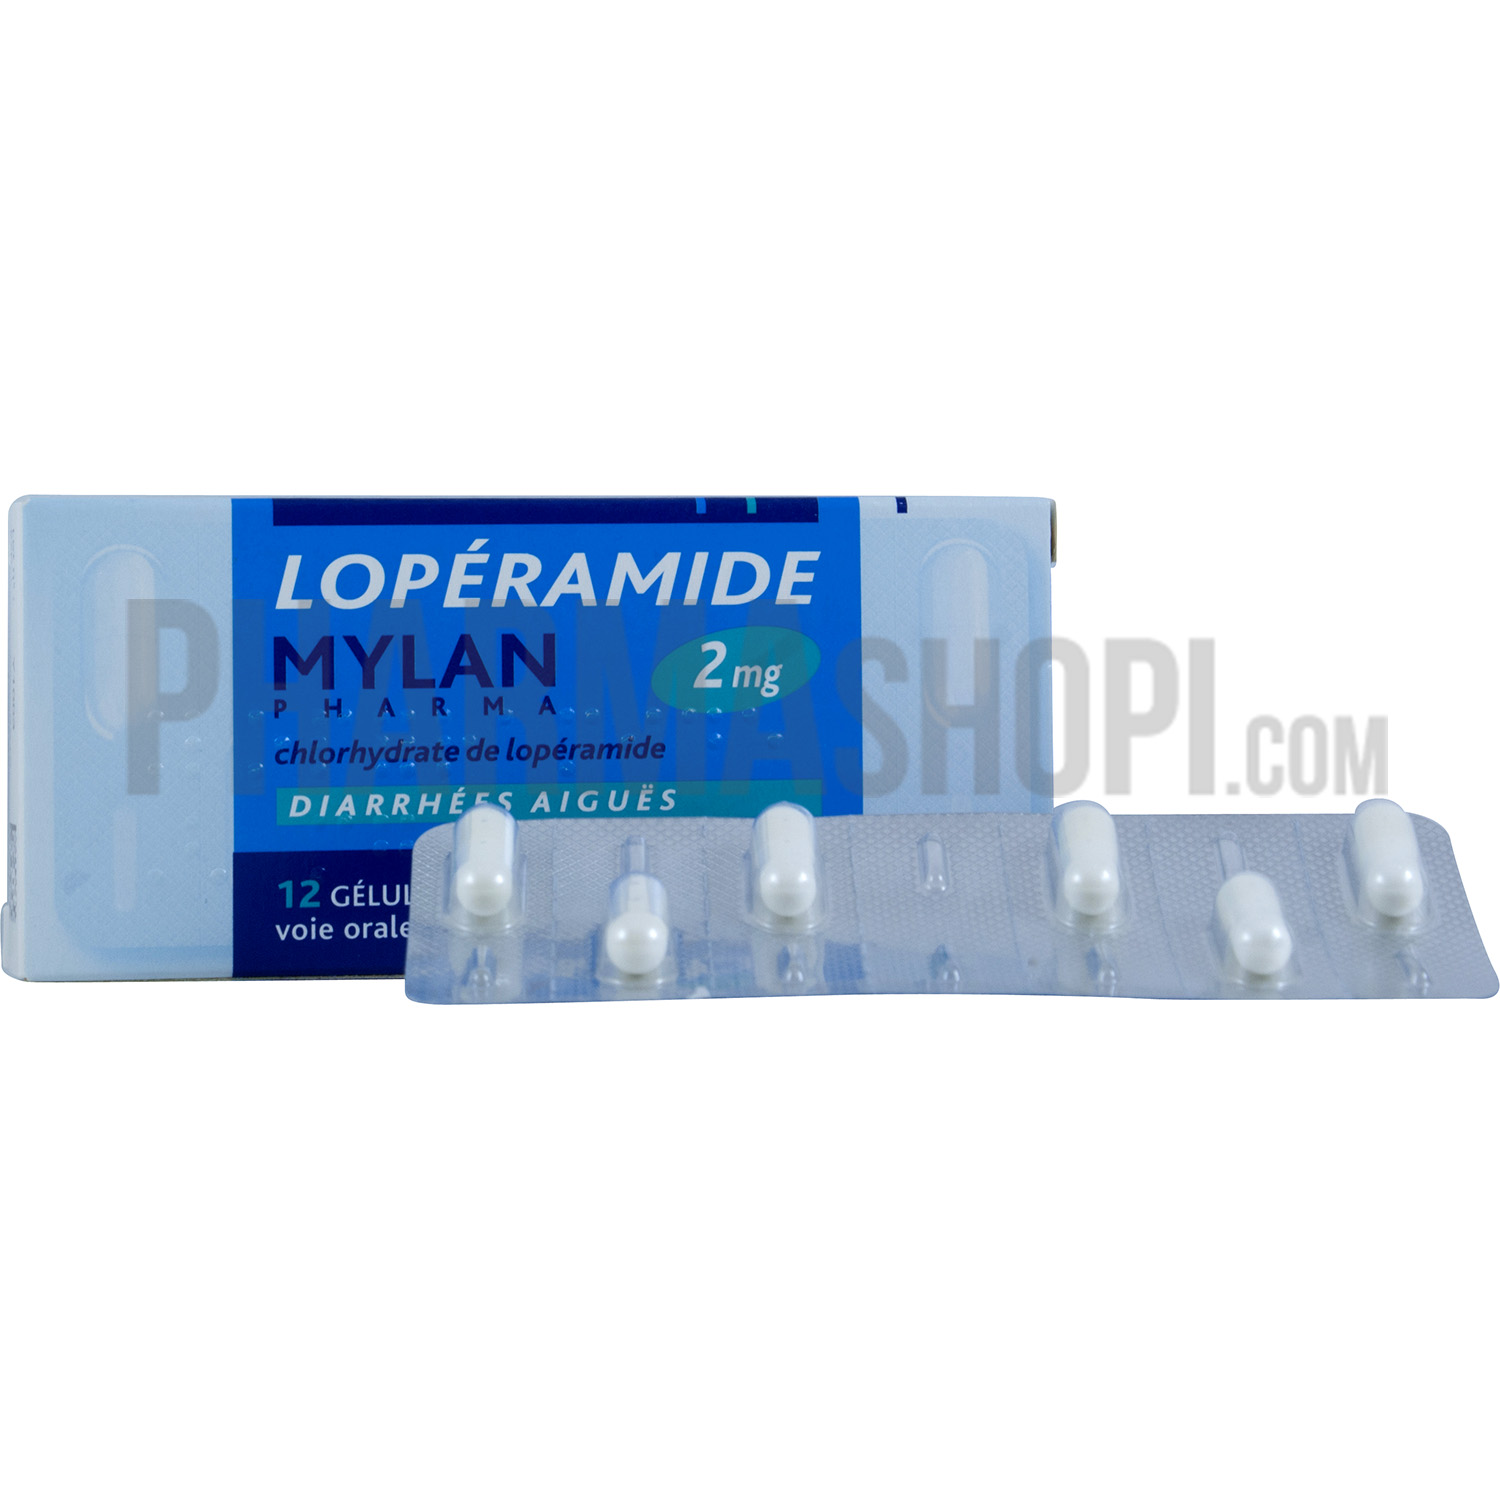 Lopéramide 2 mg Mylan gélule - boite de 12 gélules